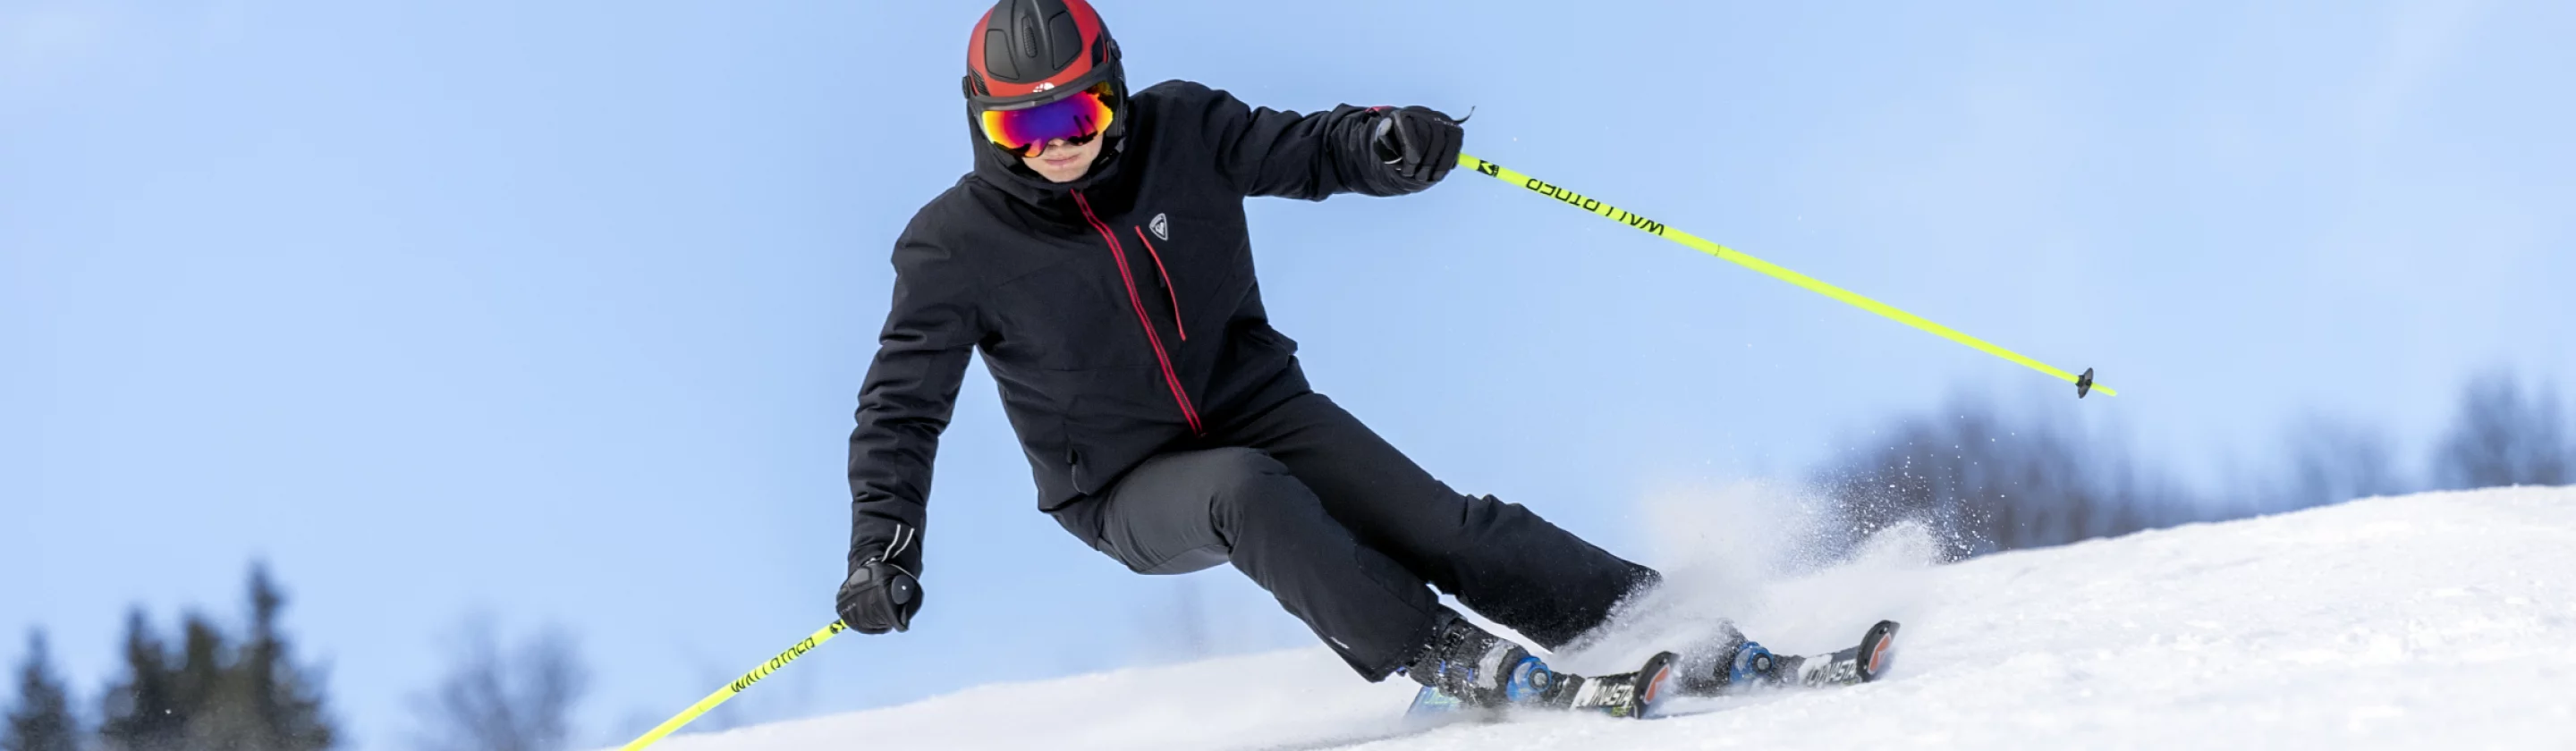 Équipez-vous pour la saison de ski avec des accessoires pas chers